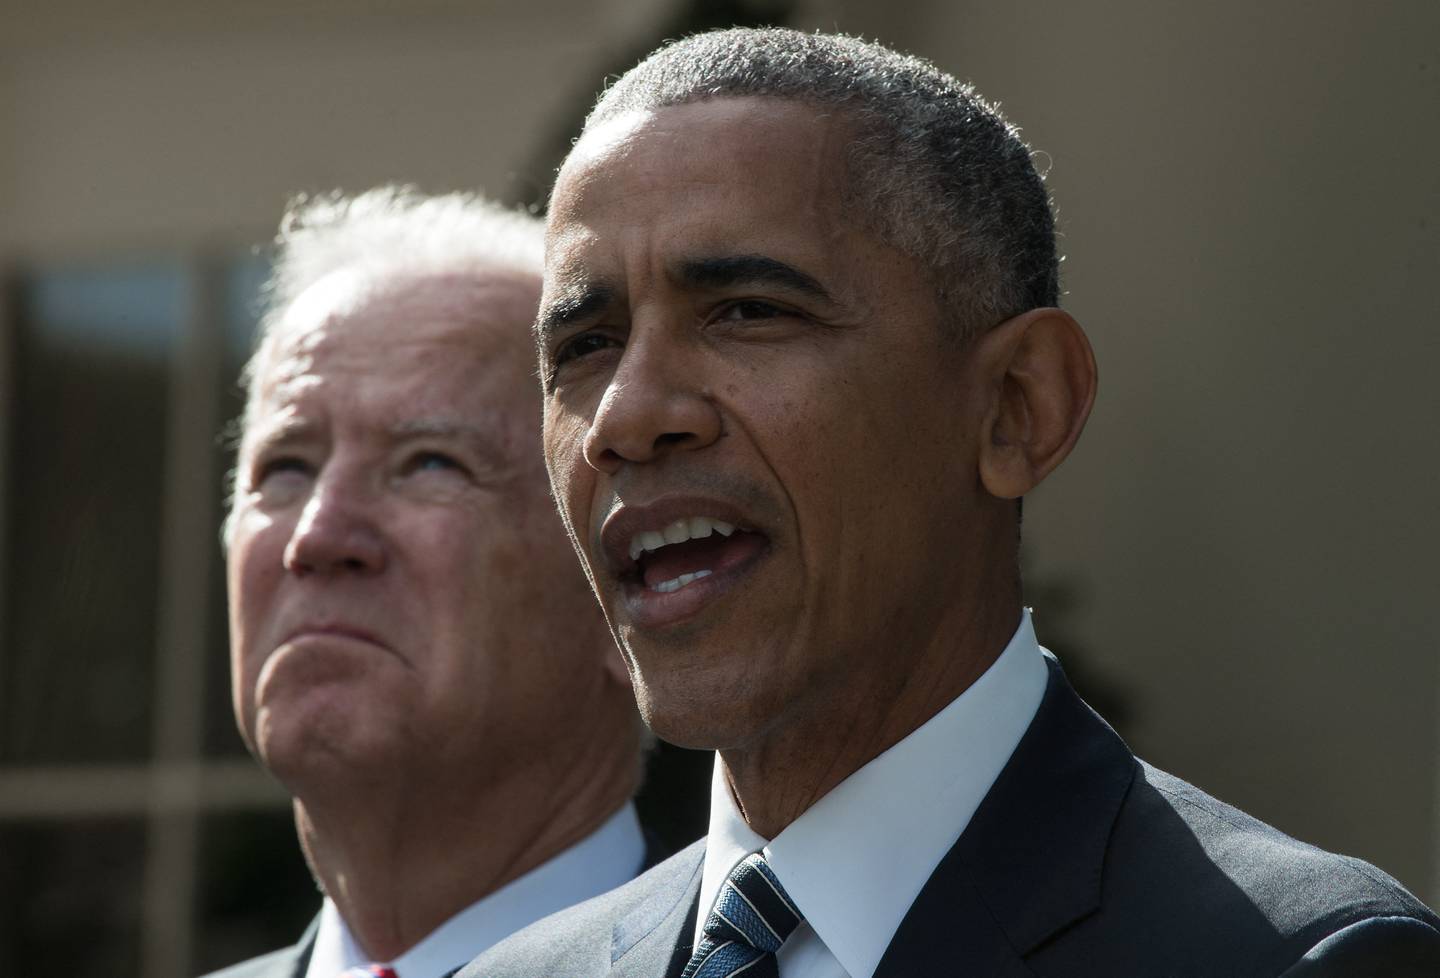 El expresidente estadounidense Barack Obama dijo a sus aliados que Joe Biden necesita reconsiderar su candidatura a la reelección, informó el Washington Post.